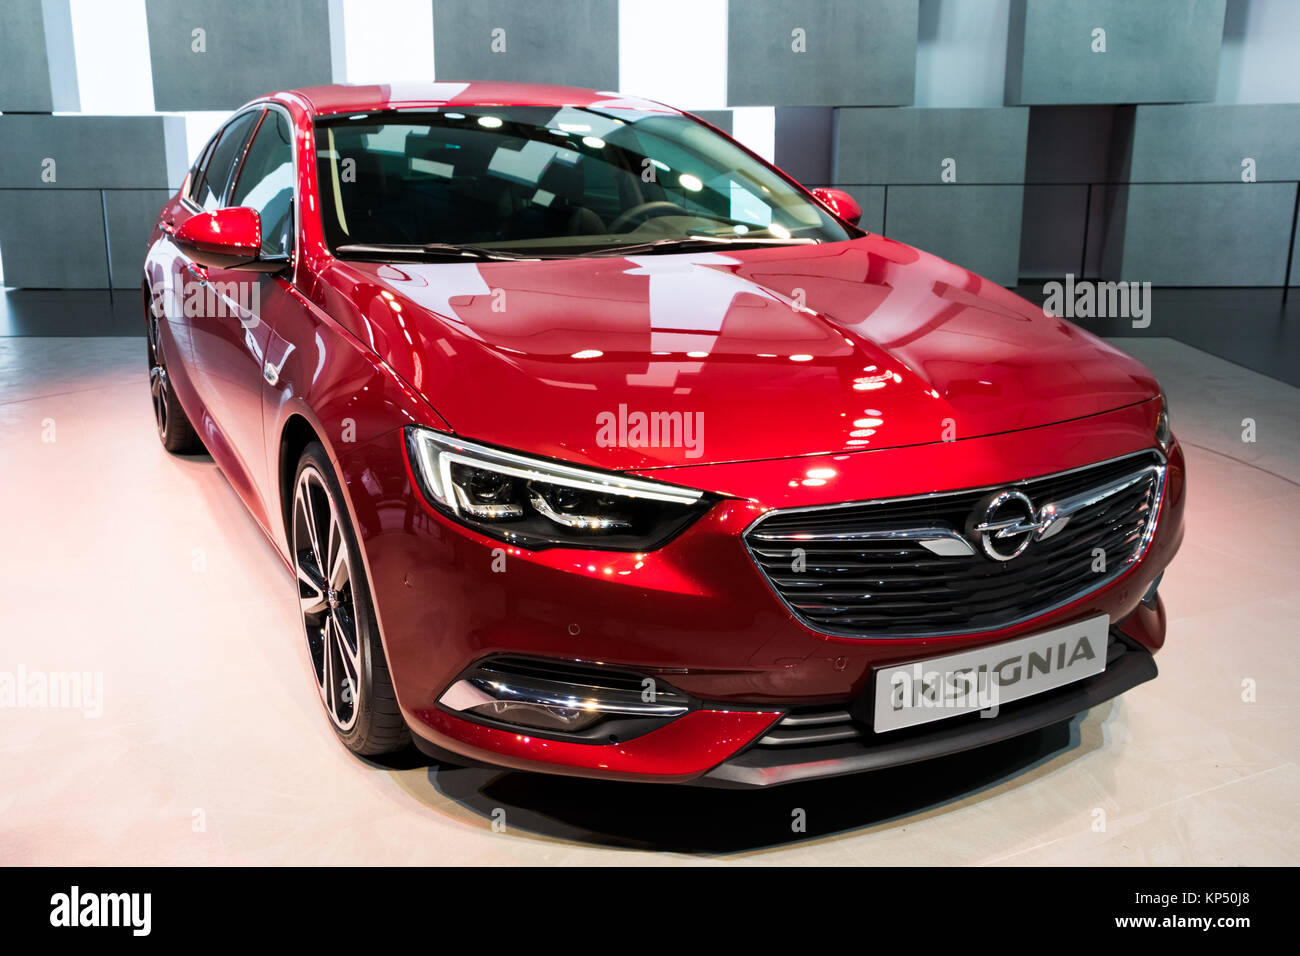 Genf, Schweiz - 7. MÄRZ 2017: Opel Insignia Auto auf dem 87.  Internationalen Automobilsalon in Genf präsentiert Stockfotografie - Alamy